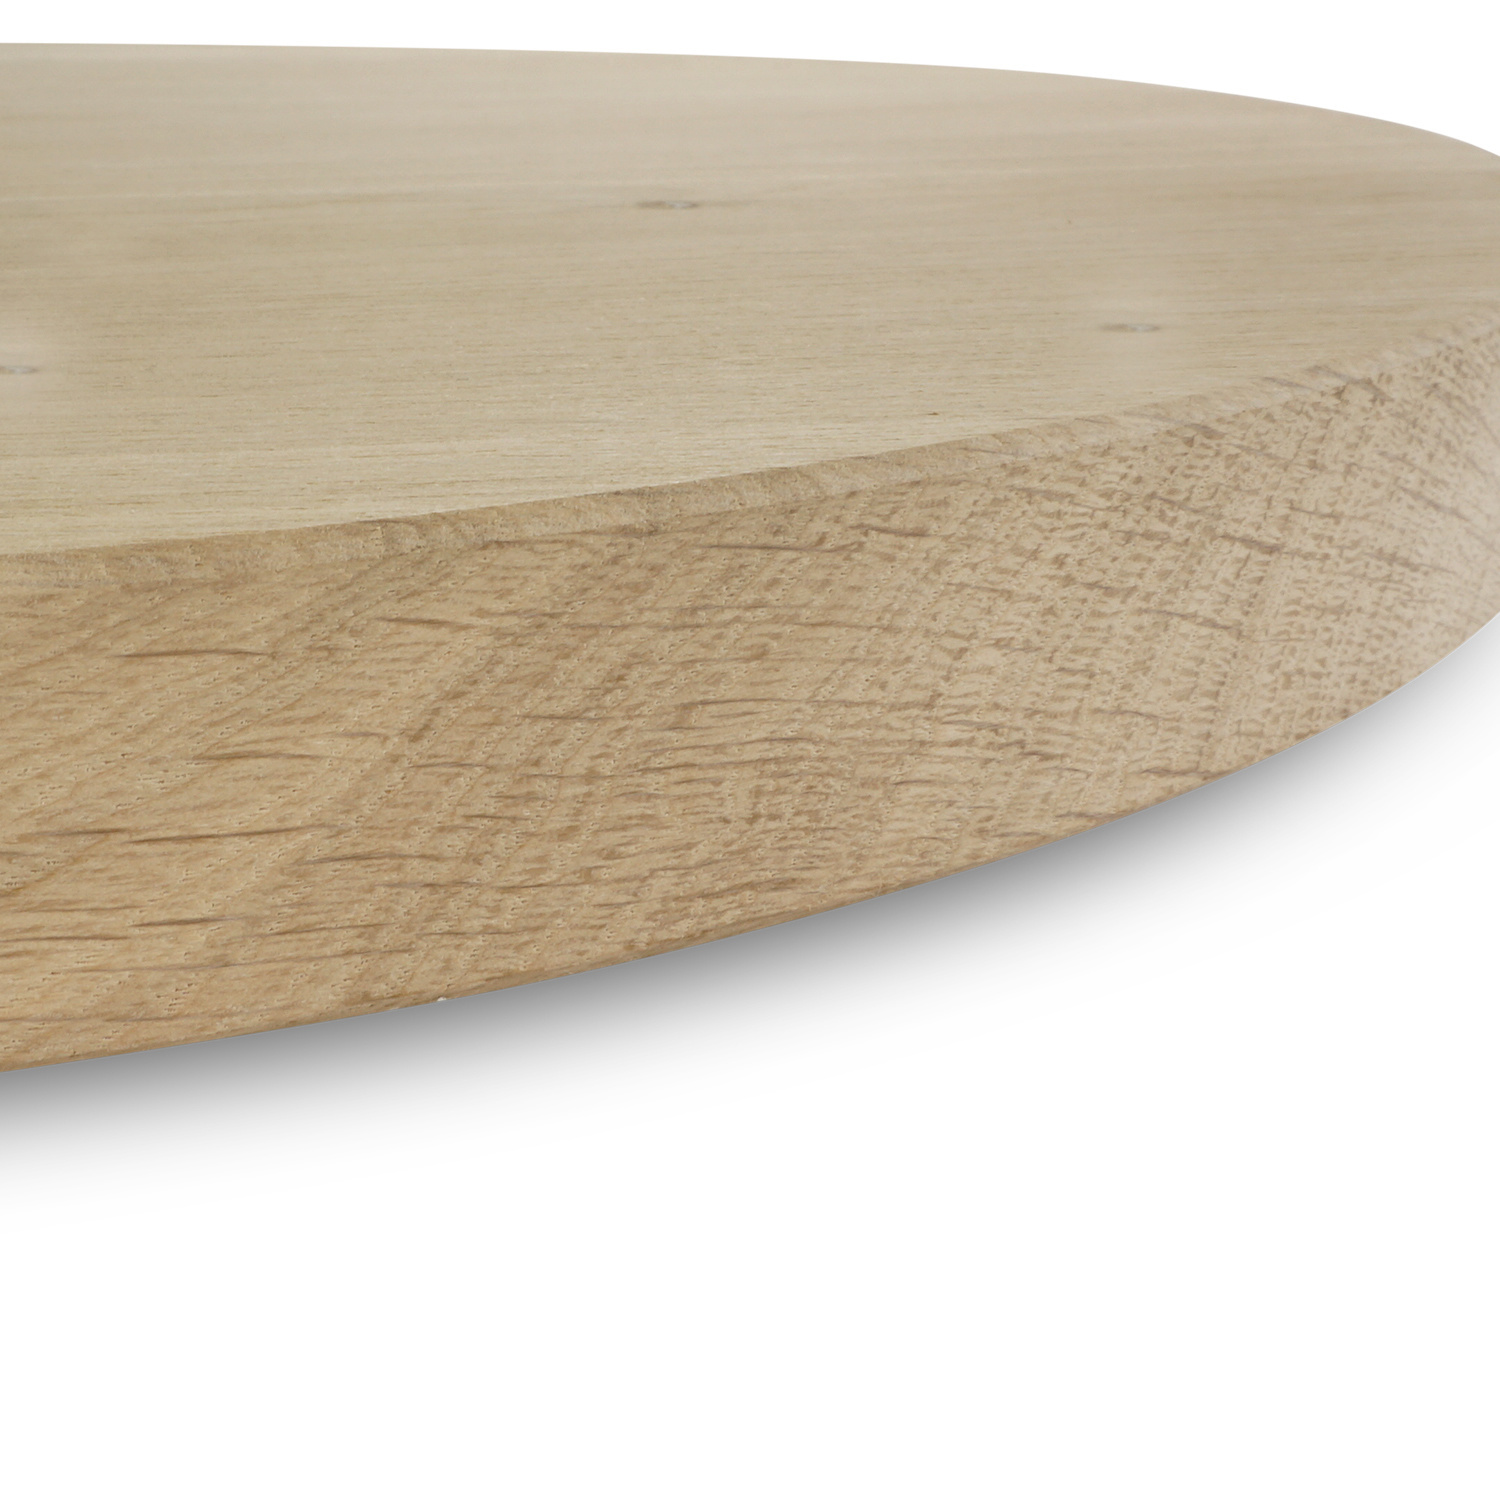  Tischplatte Eiche oval - 2,7 cm dick (1-Schicht) - Breite Lamellen (10 - 12 cm breit) - Eichenholz rustikal - Tischplatte ovale / ellipse Eiche - verleimt & künstlich getrocknet (HF 8-12%) - verschiedene Größen